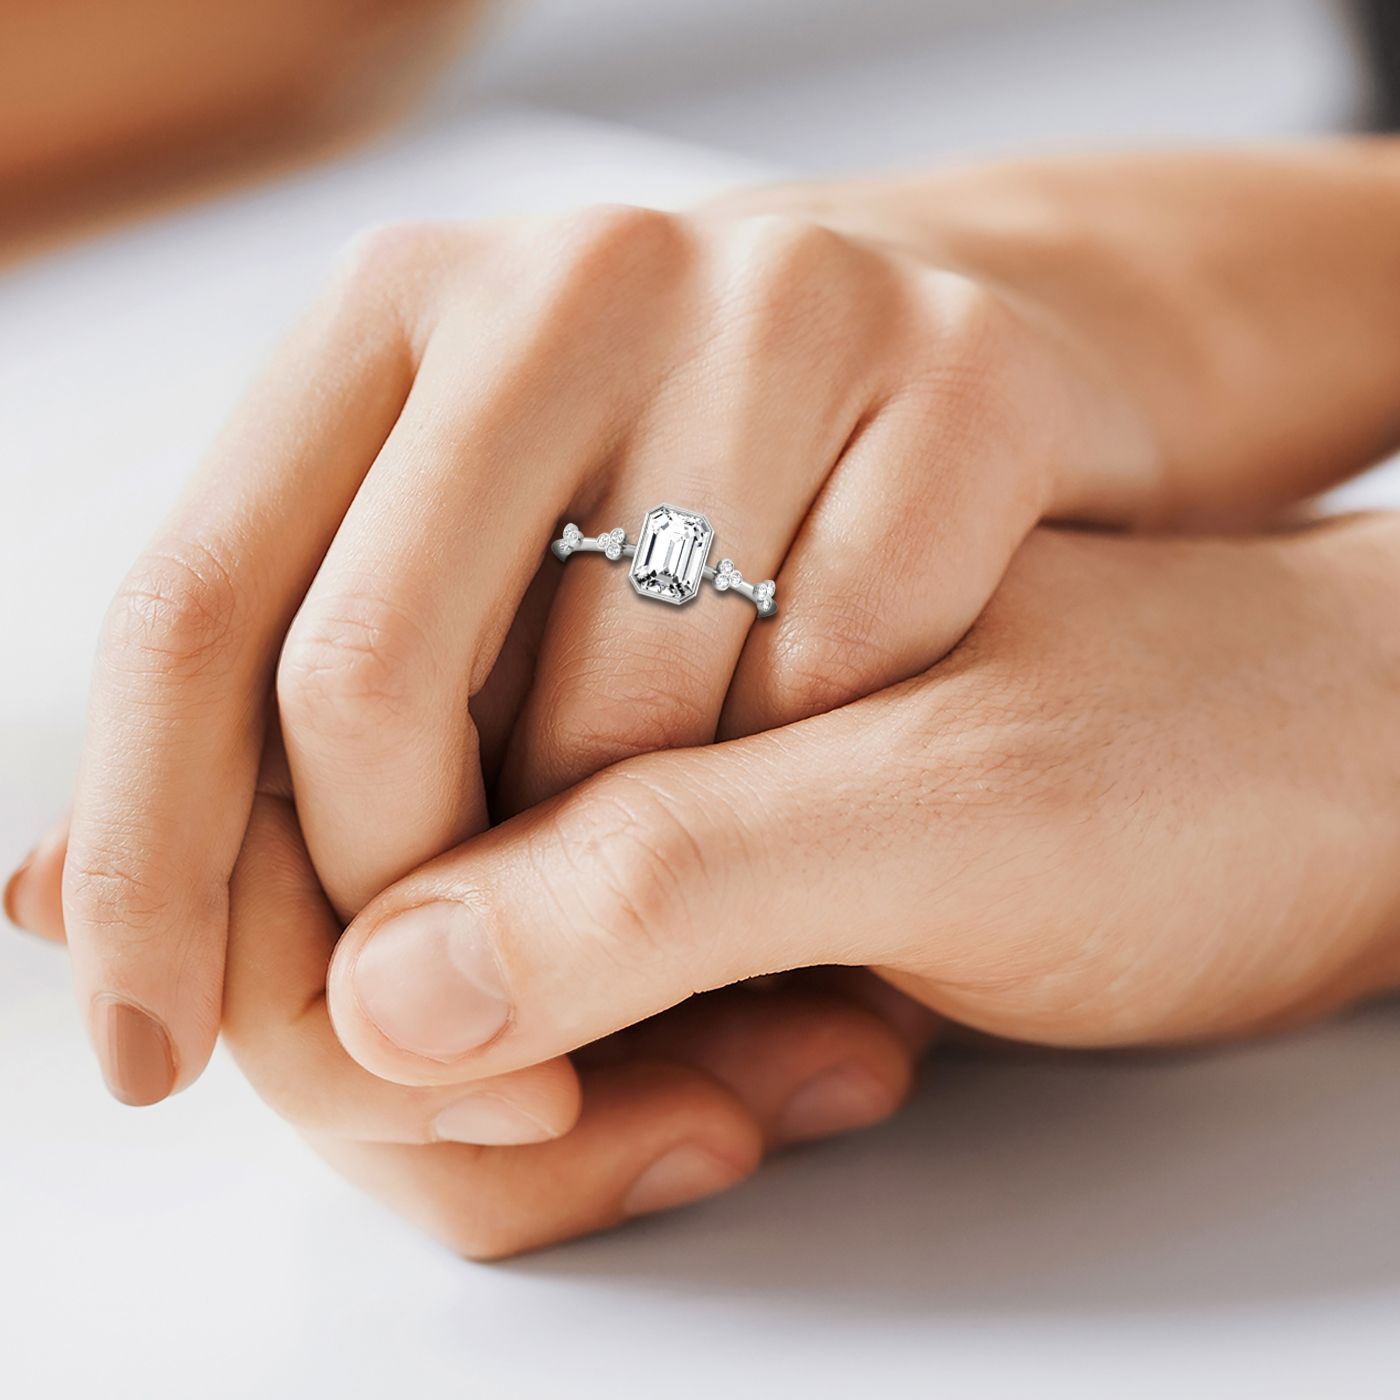 14kw Bezel Set Emerald Engagement Ring With 12 Clover Bezel Set Round Diamonds On Shank